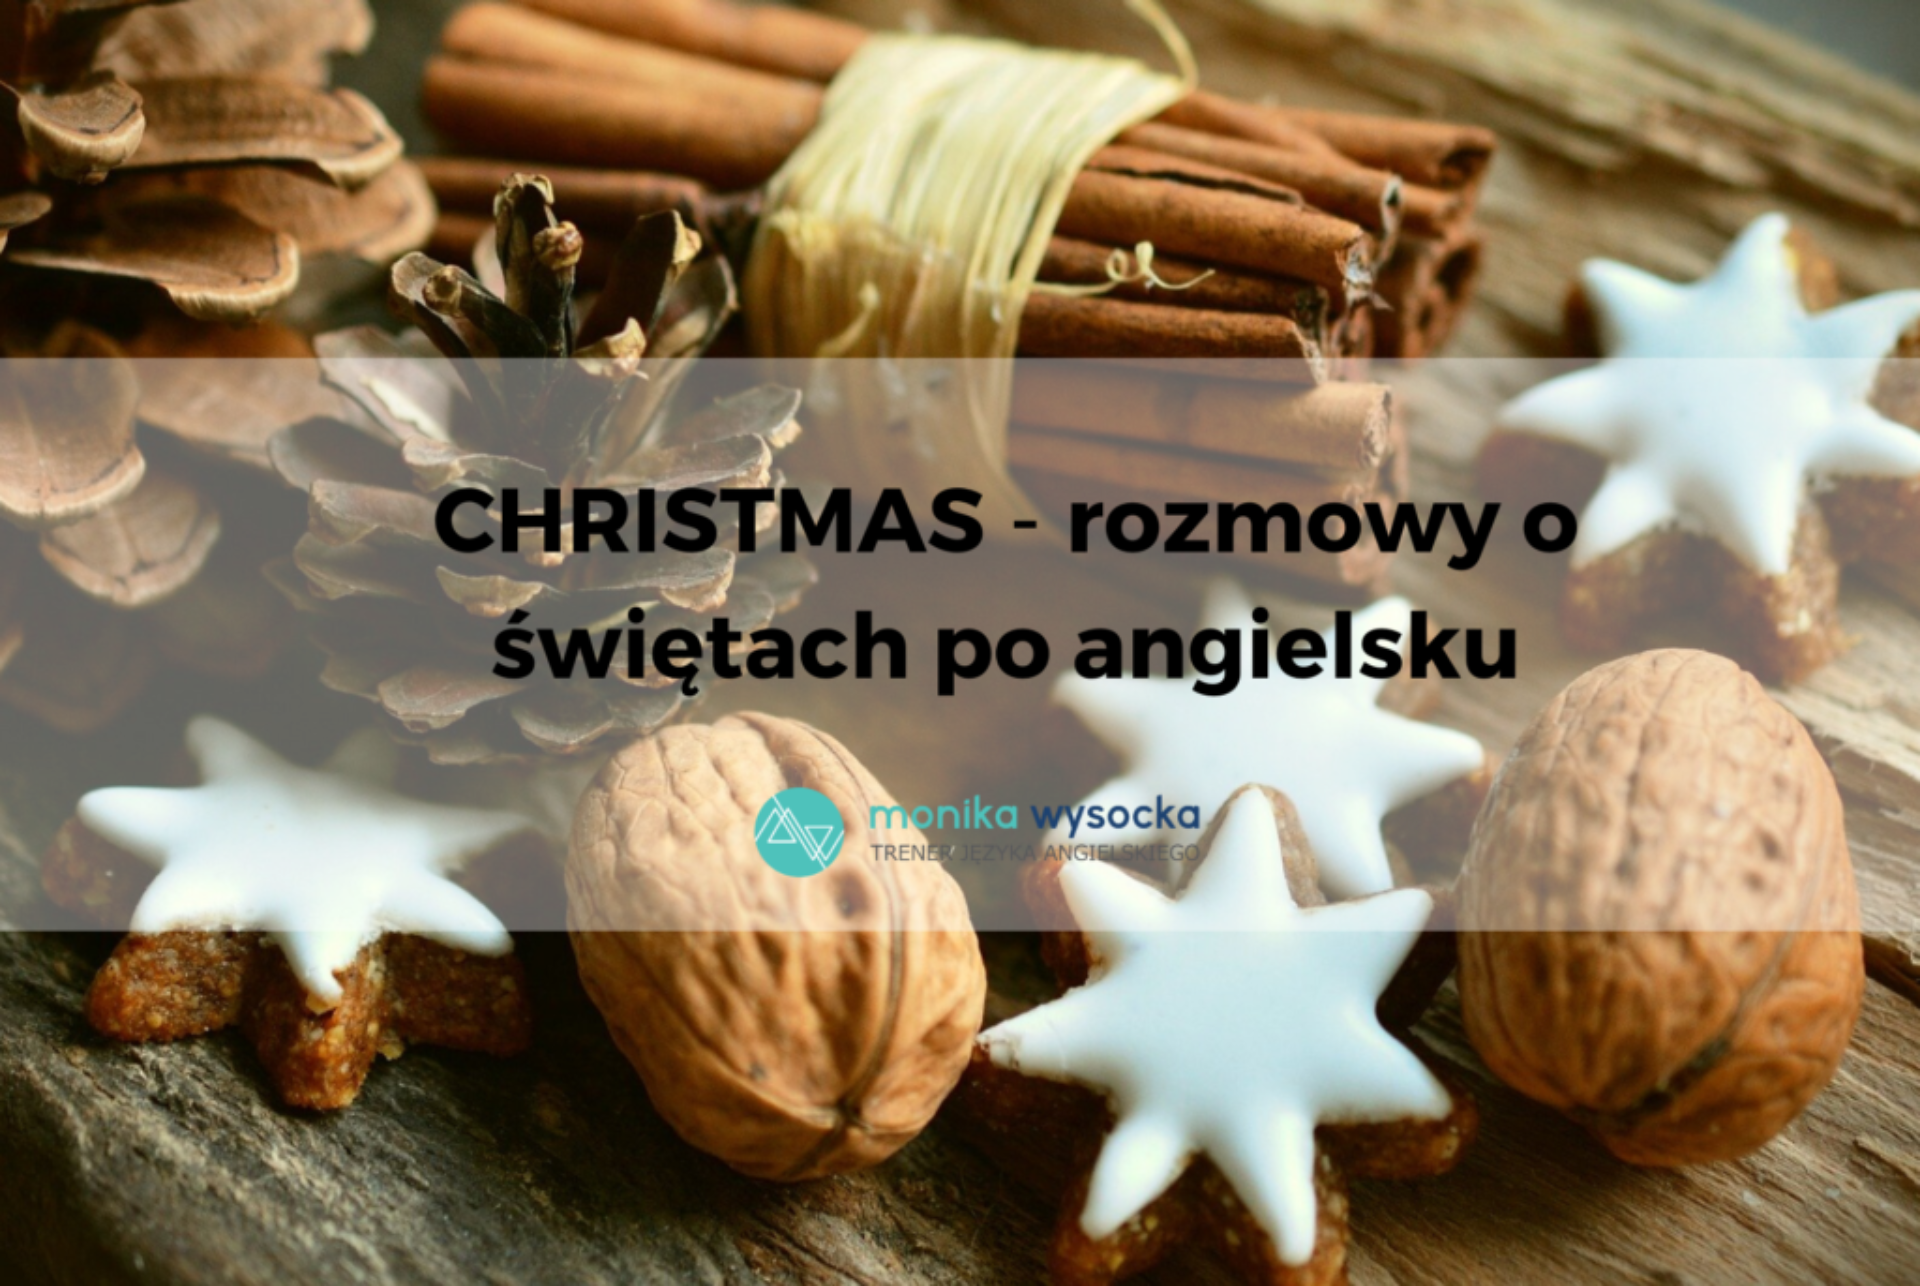 Christmas - romozyw o świętach po angielsku